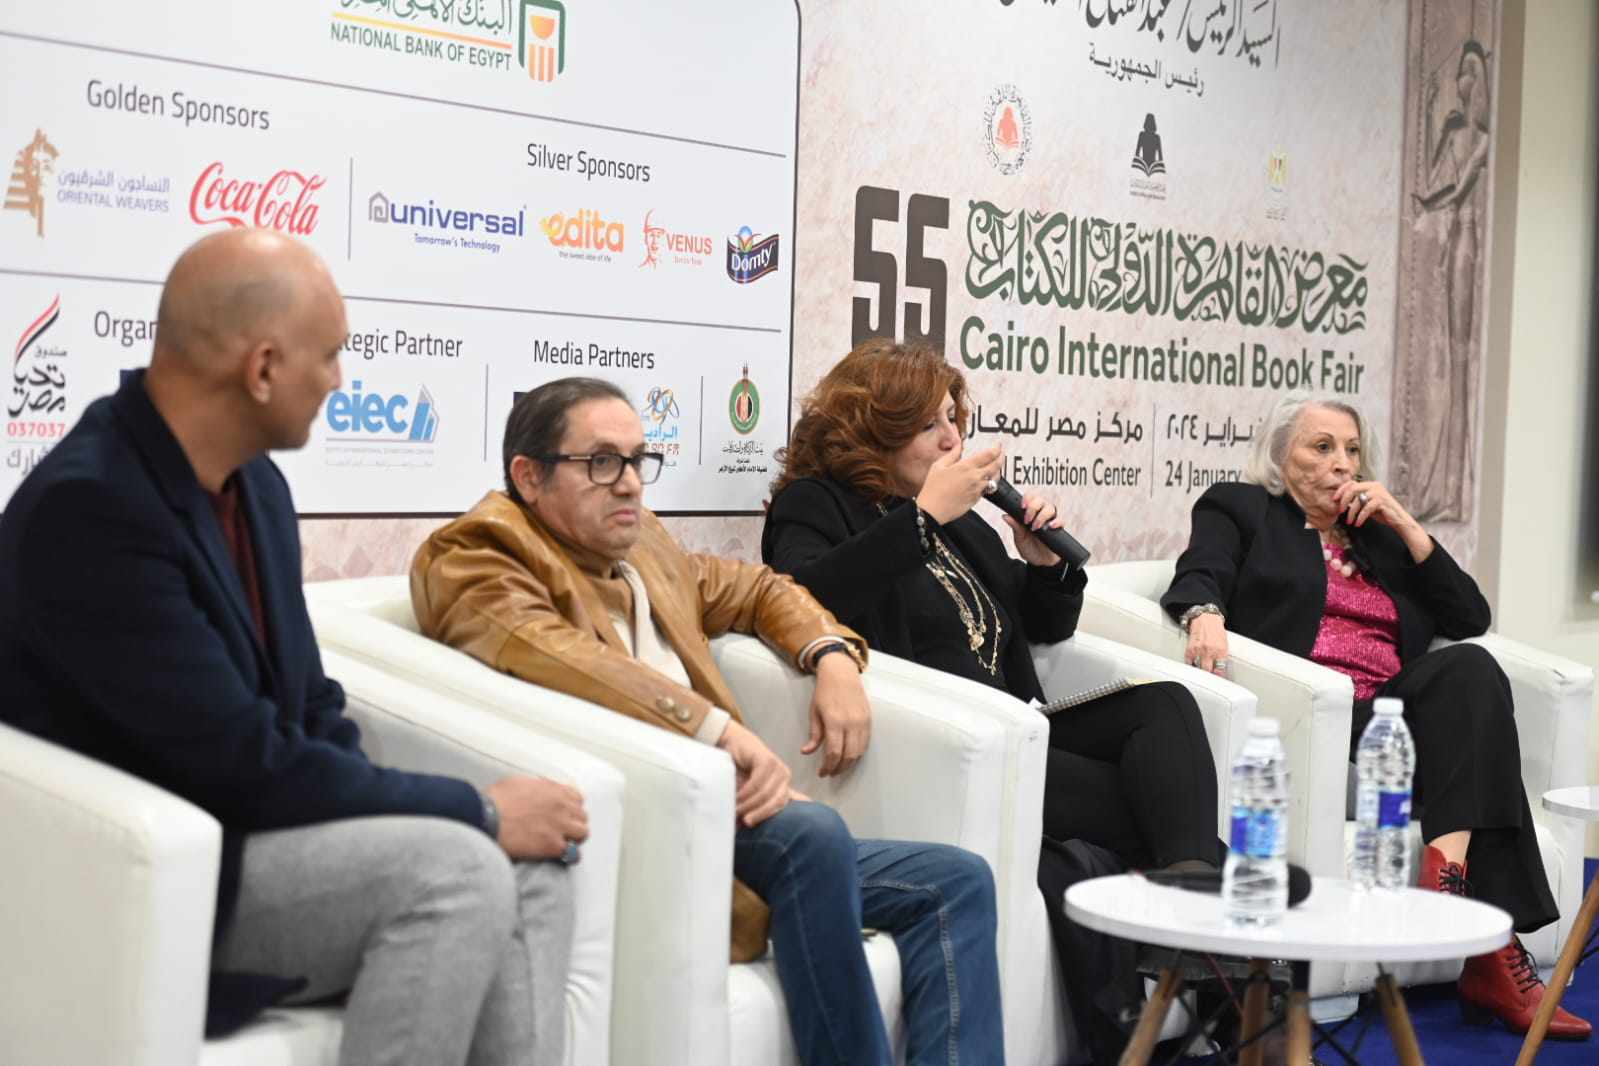  احتفال الصالون الثقافي في معرض الكتاب بمئوية الفنان علي رضا 